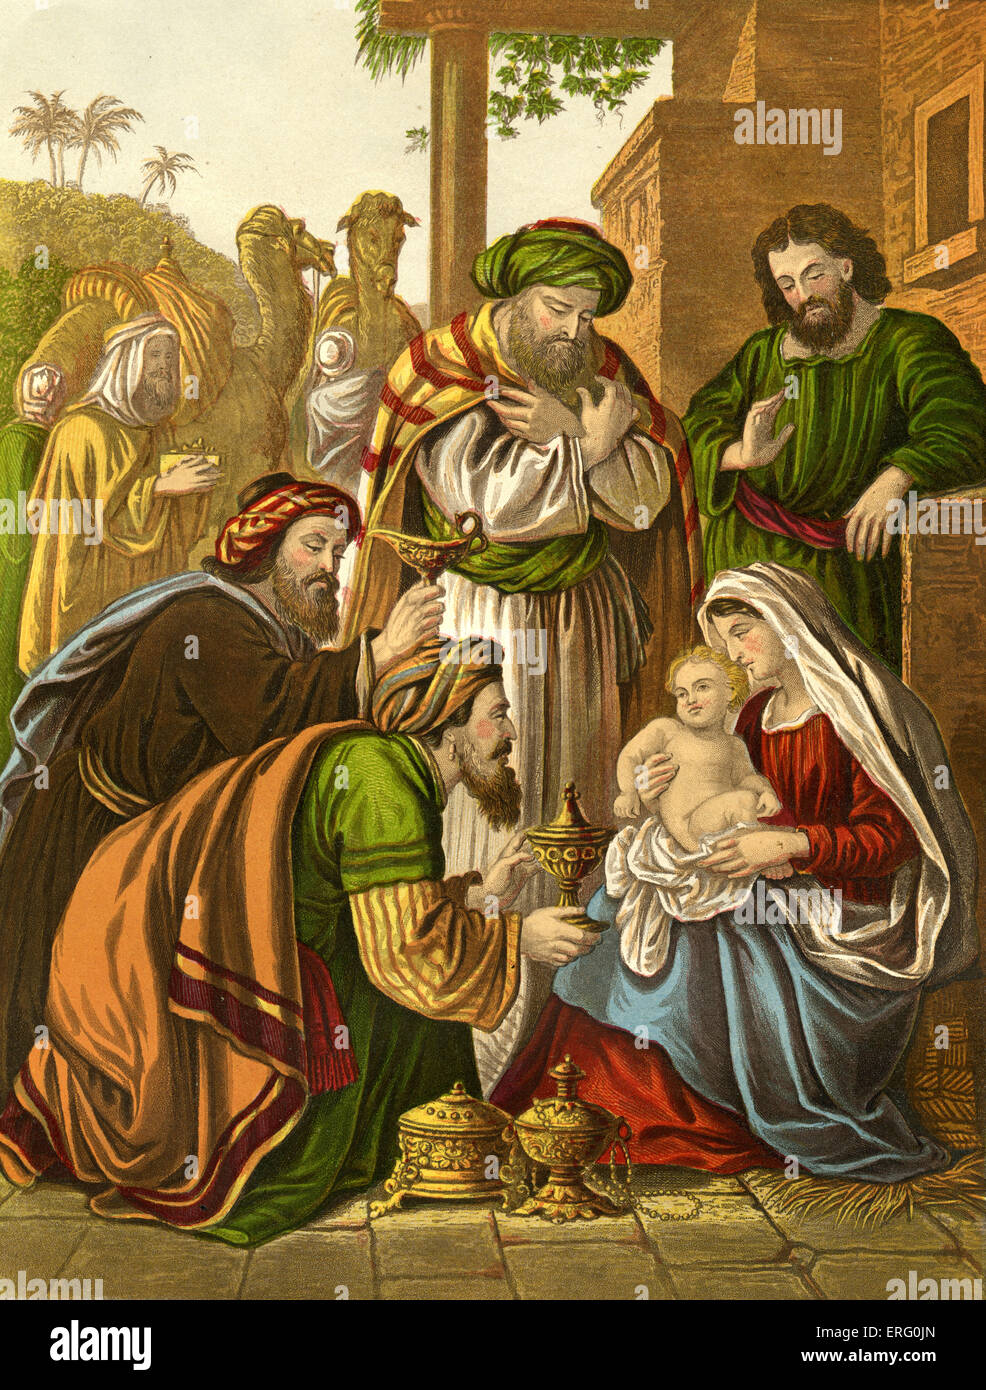 Les Sages visiter le bébé Jésus 'et ils entrèrent dans la maison et virent le petit enfant avec Marie sa mère ; et ils se prosternèrent et l'adorèrent ; ils ouvrirent leurs coffrets et lui a offert de l'or, de la myrrhe et frakincense et'. Matthieu II, 9-11 Banque D'Images